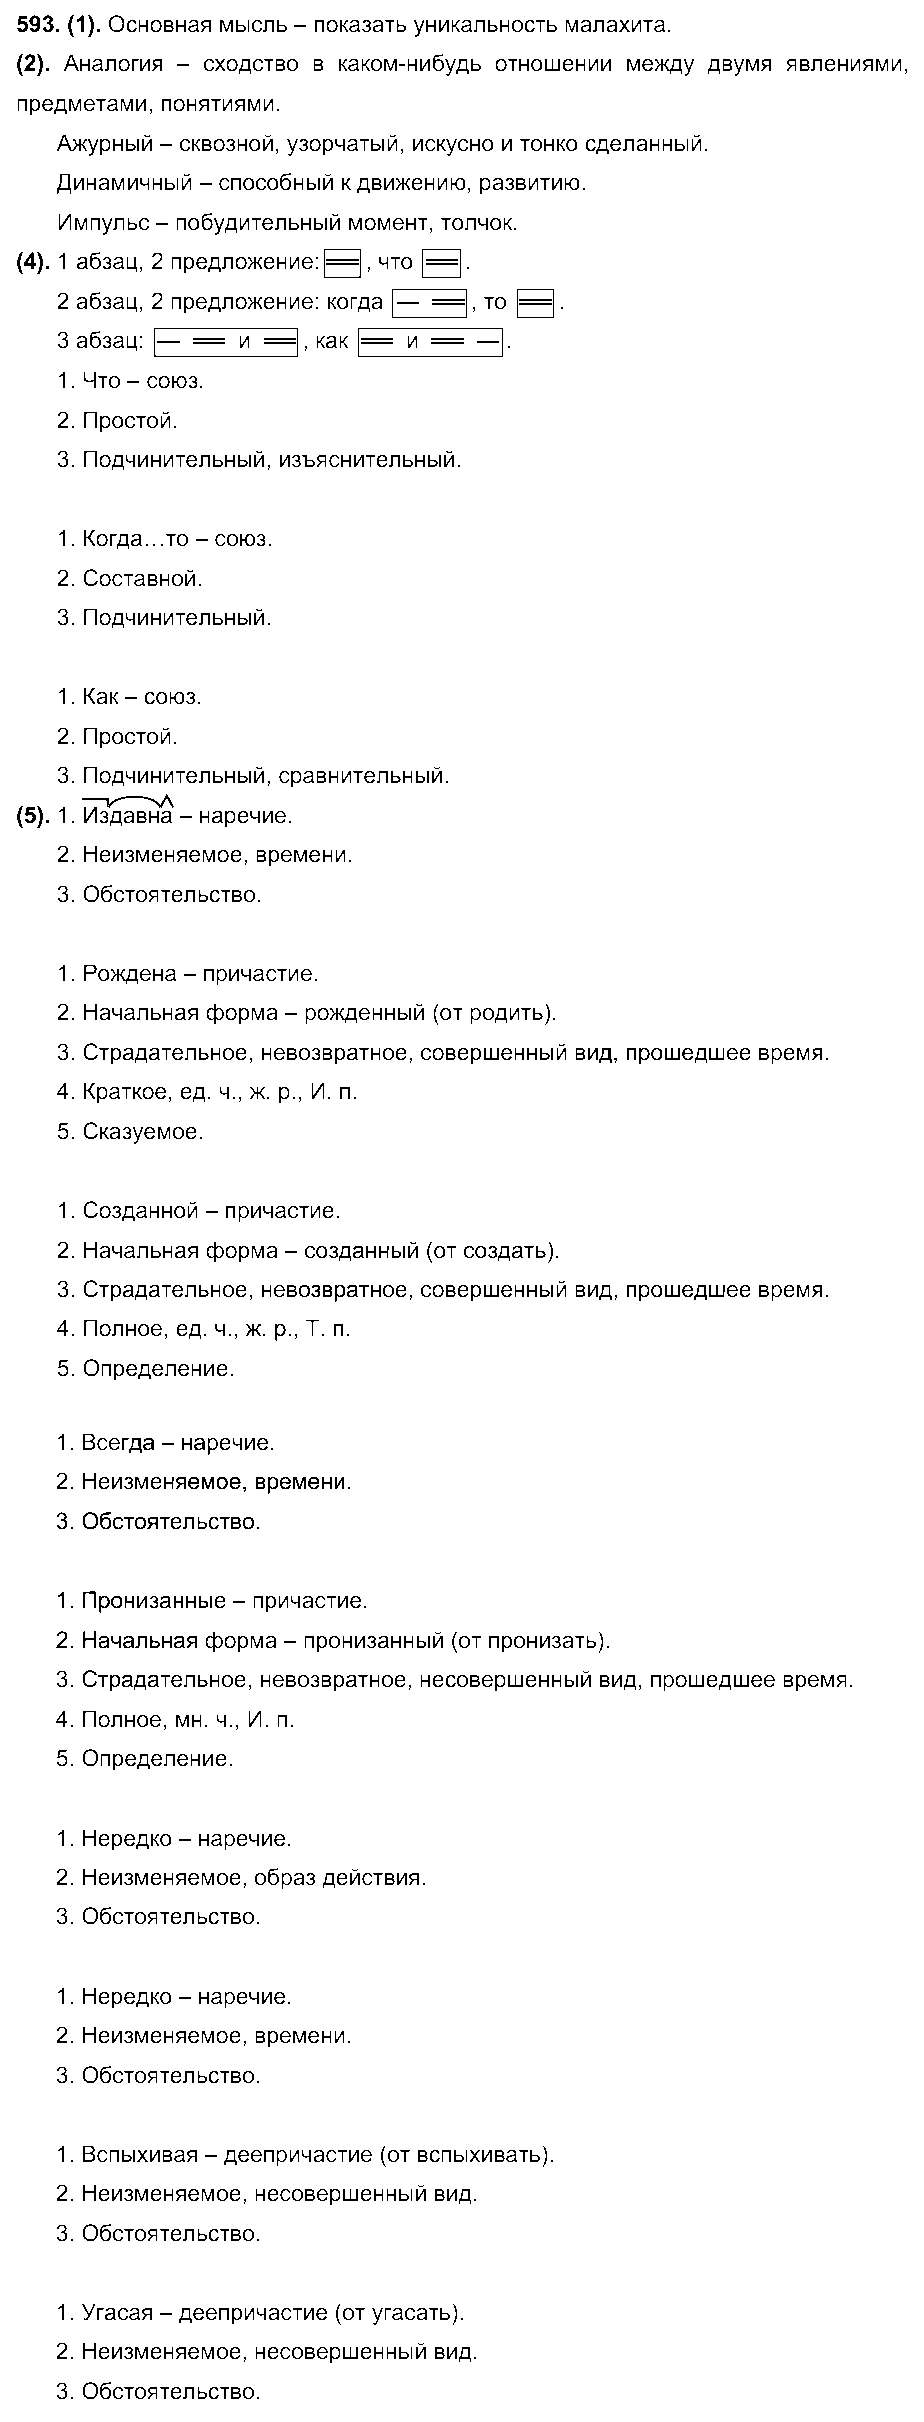 ГДЗ Русский язык 7 класс - 593